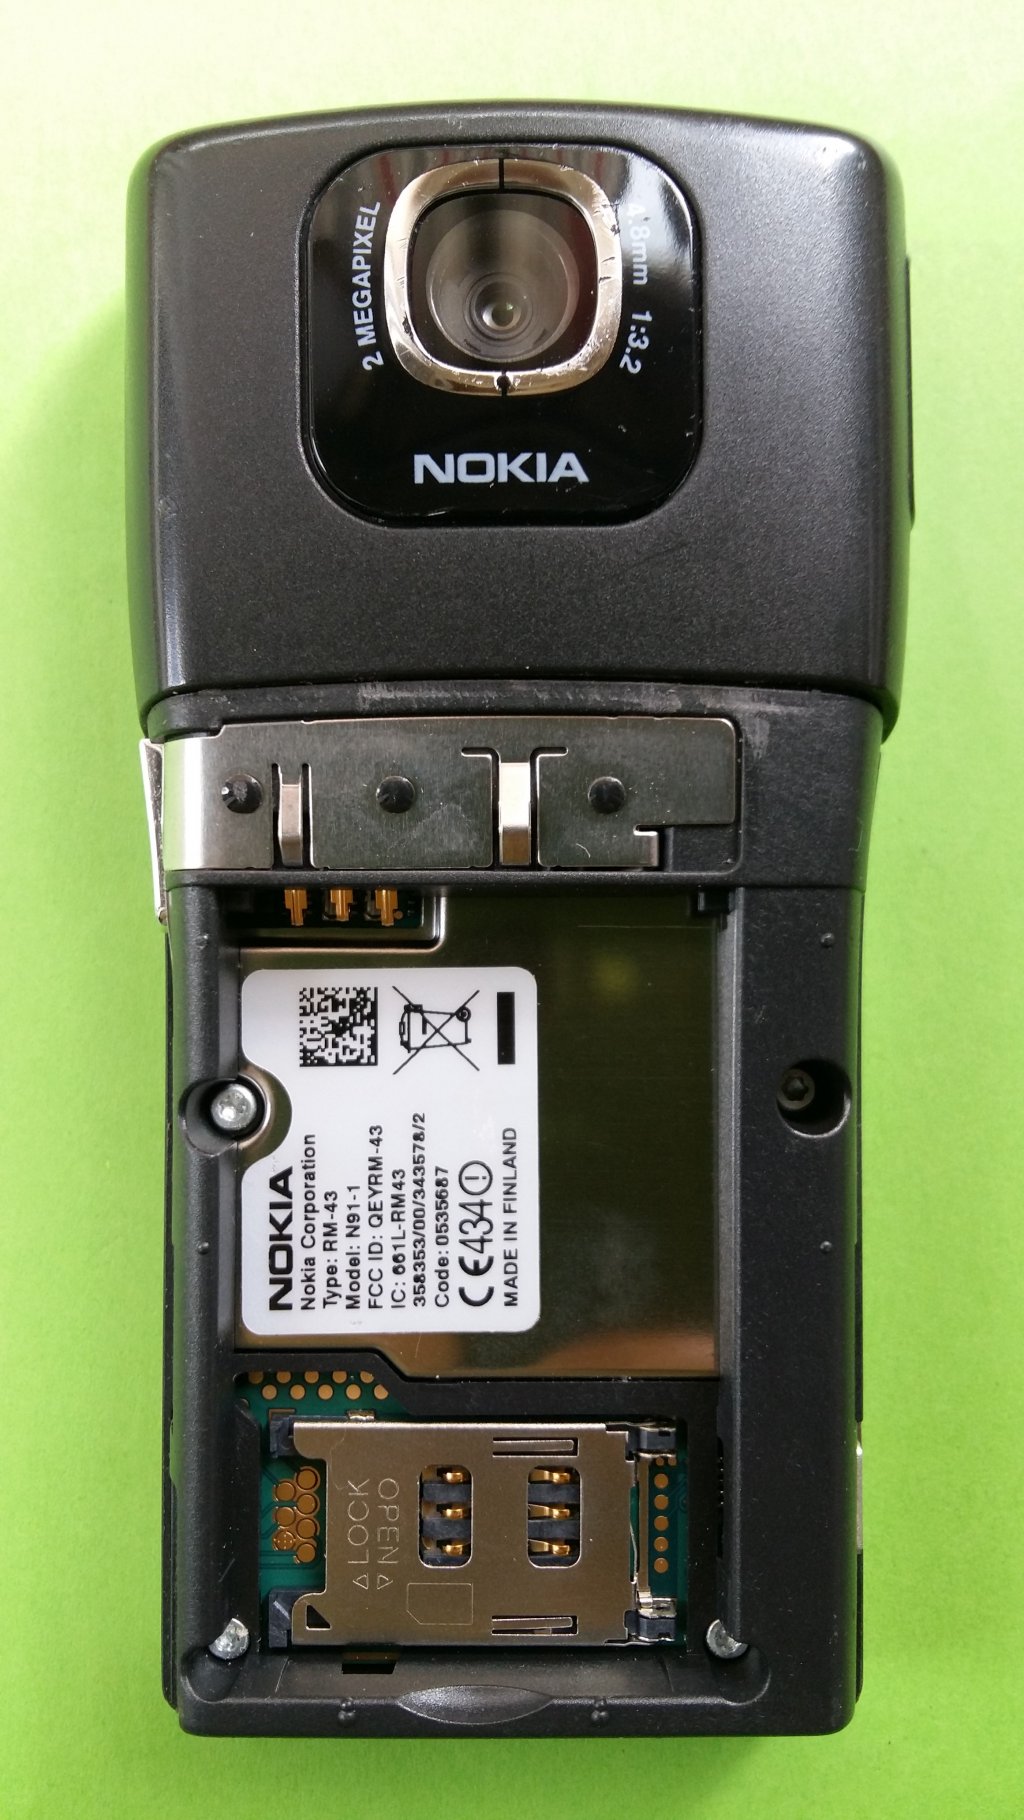 image-9894161-Nokia_N91-1_(1)5-c9f0f.w640.jpg